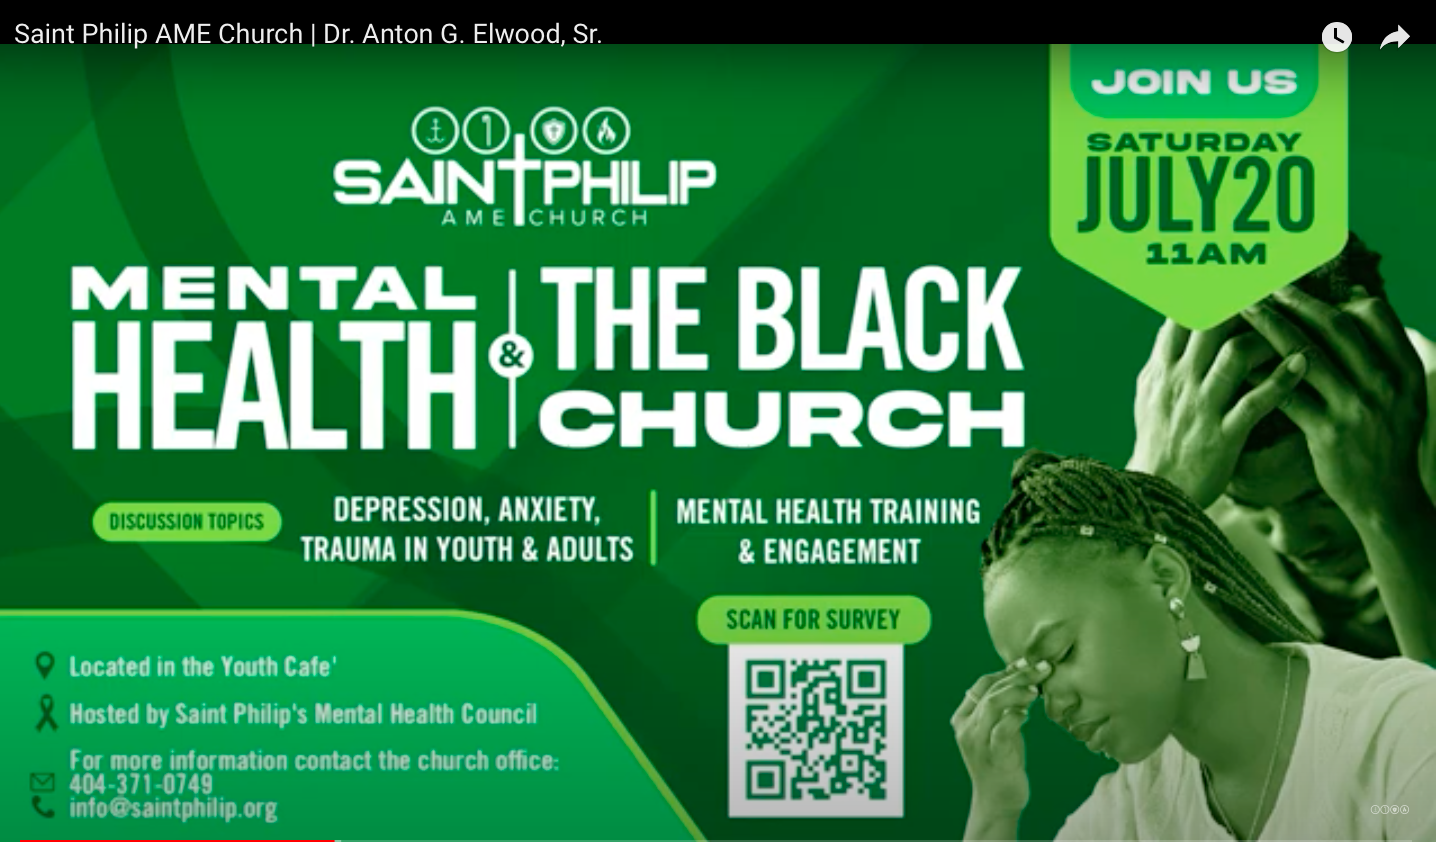 MH & the Black Church